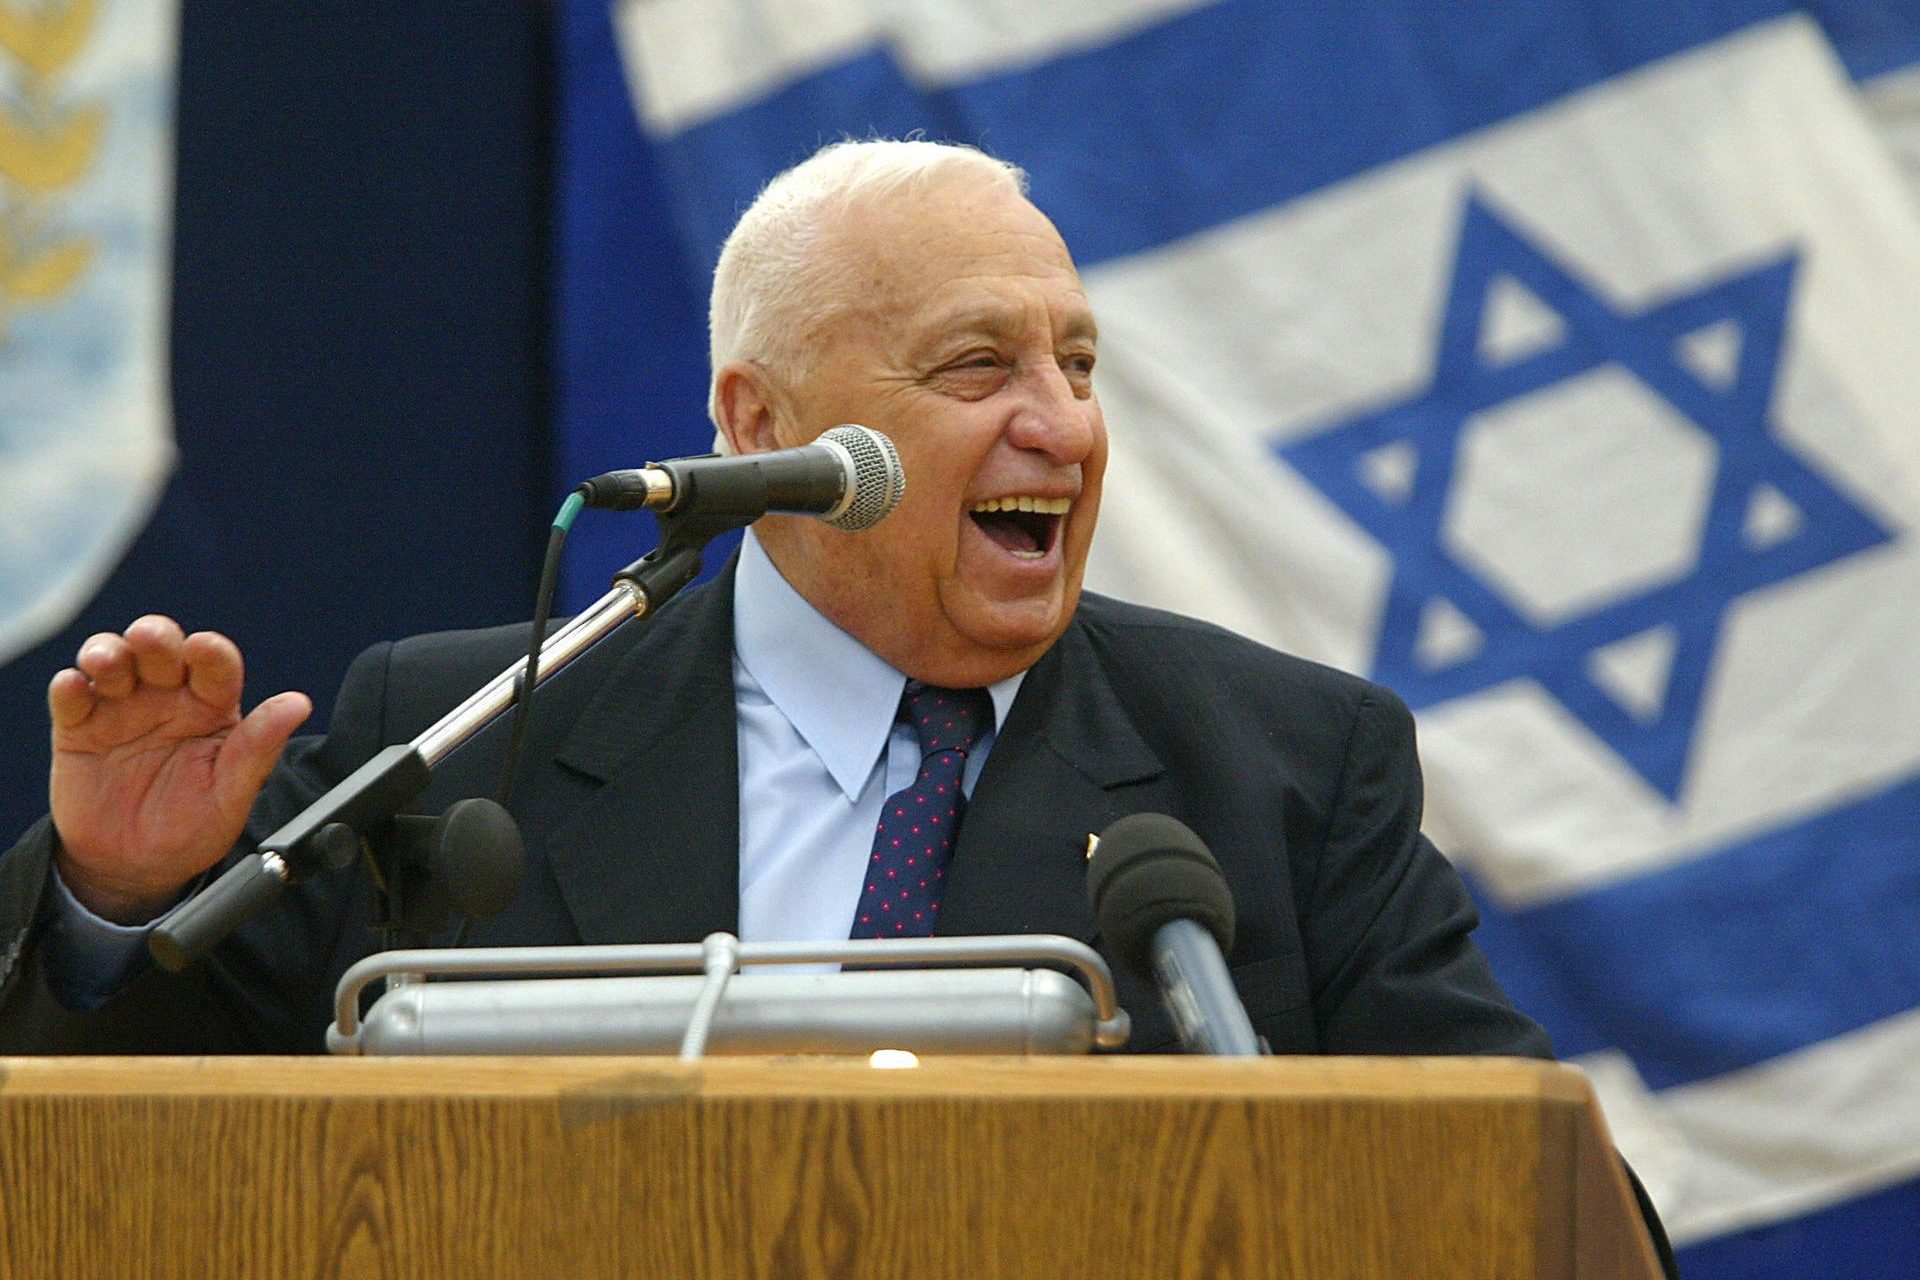 Le coma d’Ariel Sharon